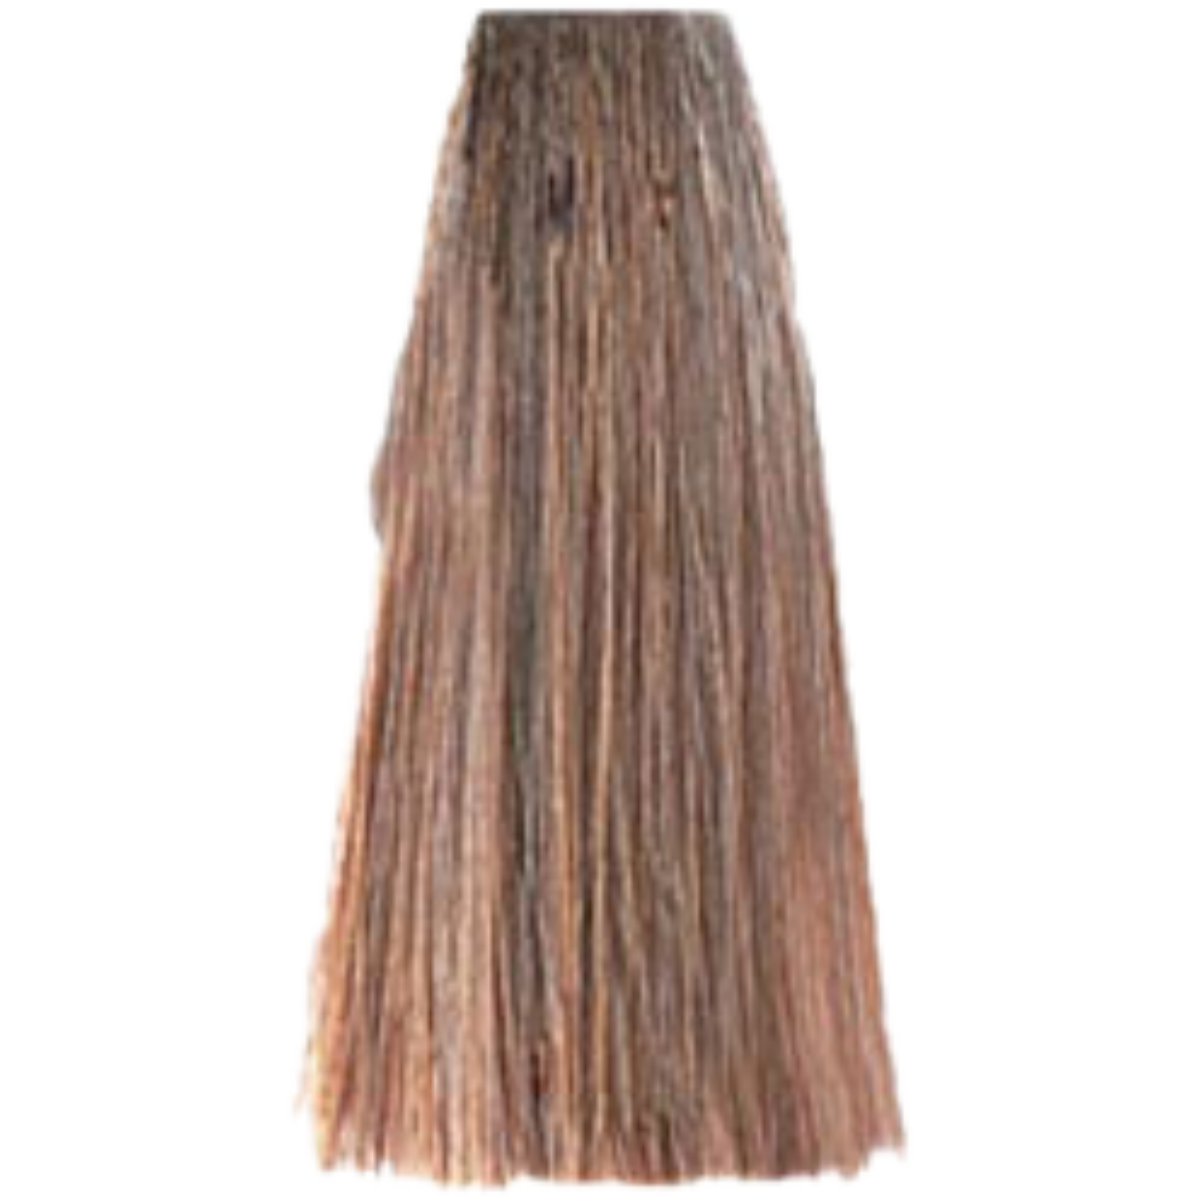 צבע שיער בסיס 8.0 NATURALS LIGHT BLONDE פארמויטה FarmaVita צבע לשיער 100 גרם